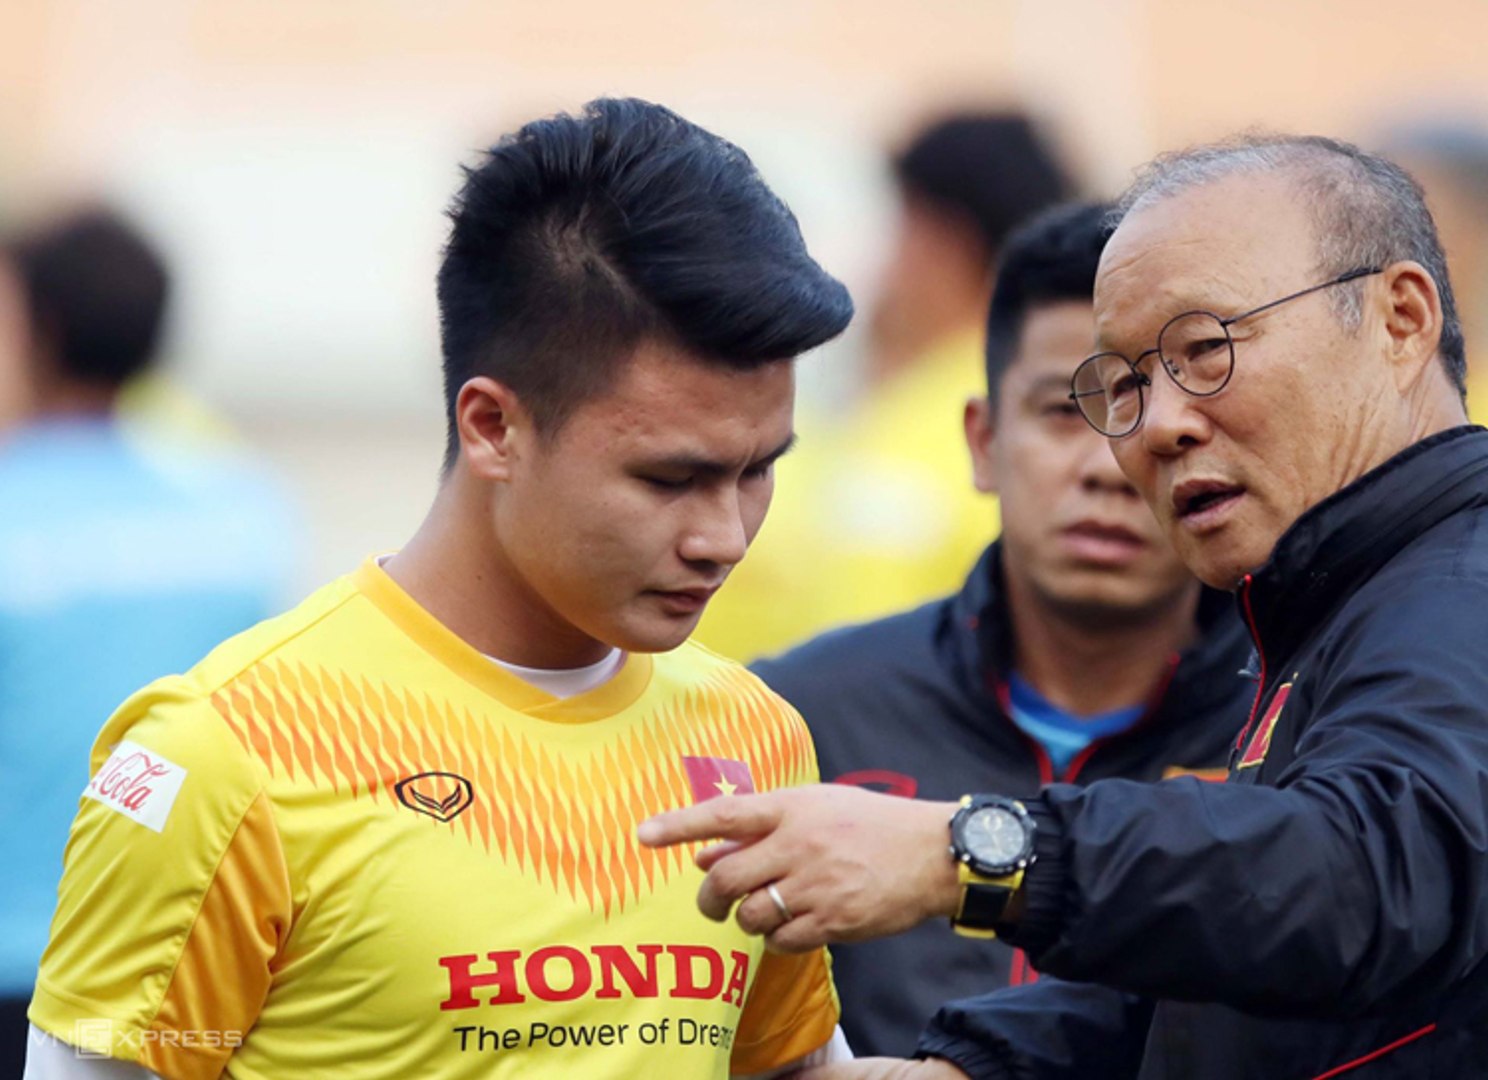 HLV Park 'kể tội' Quang Hải giữa lúc số 19 ĐT Việt Nam đối mặt nguy cơ chôn vùi sự nghiệp tại Pau FC